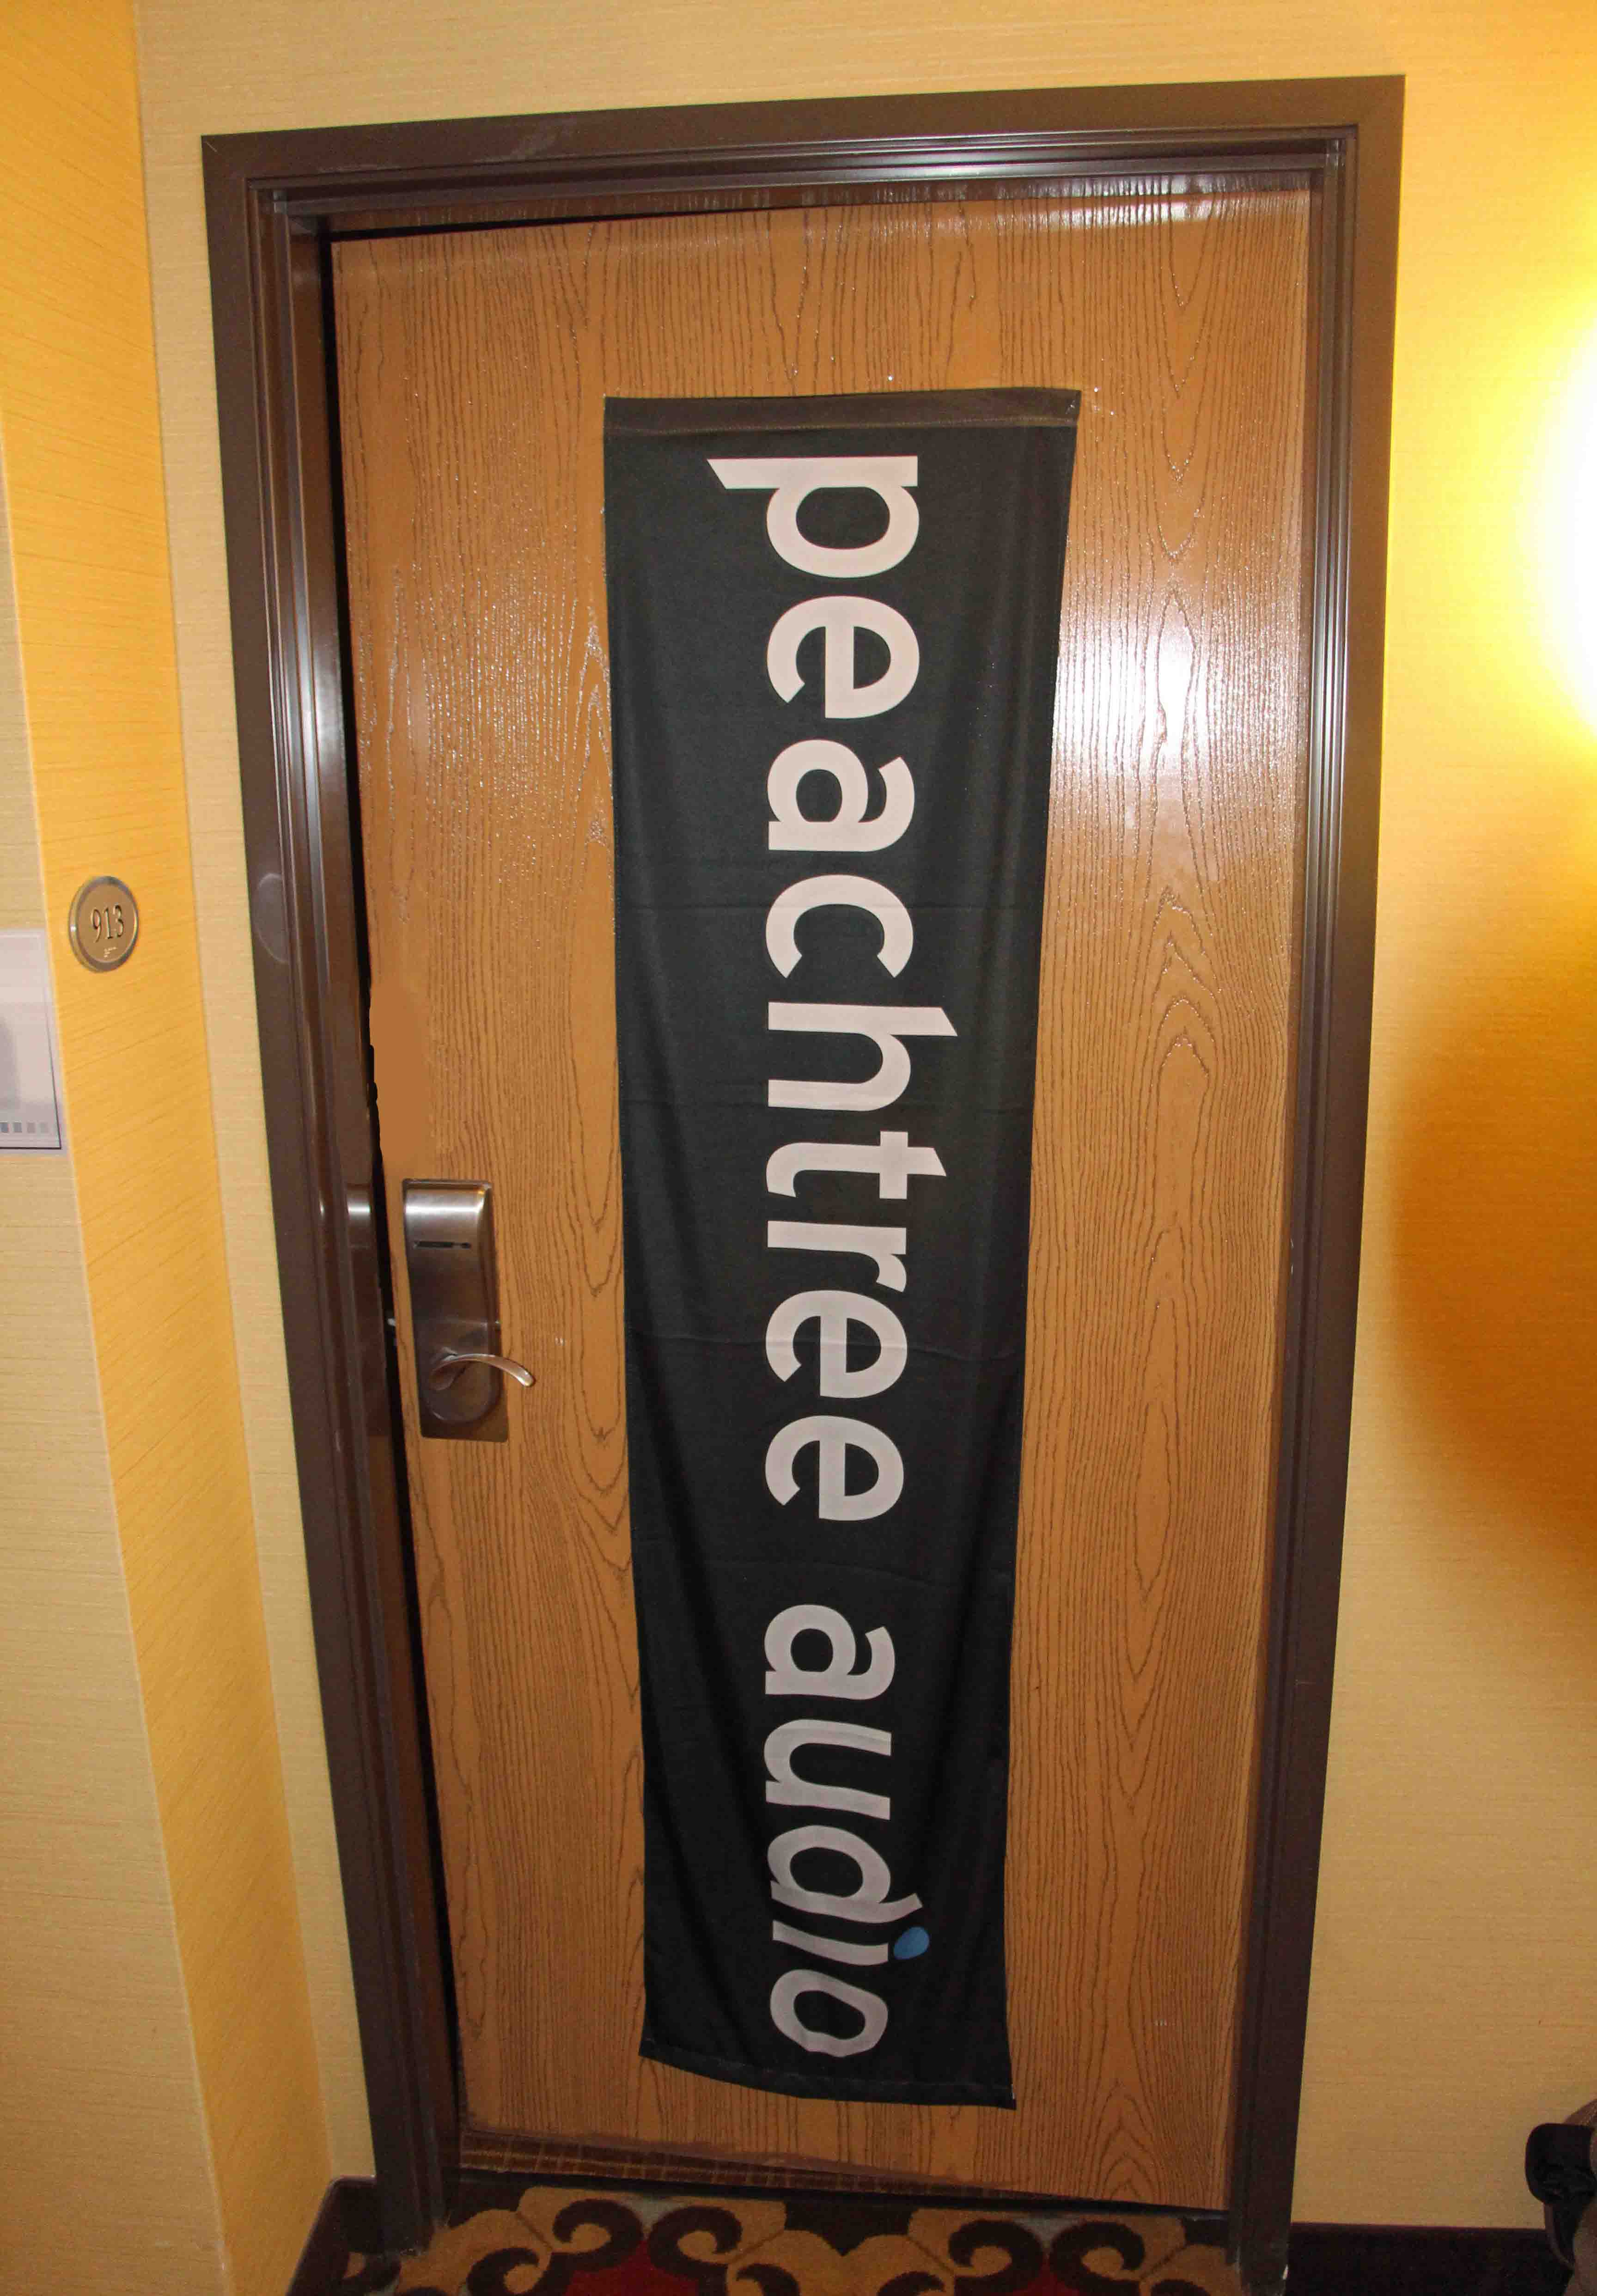 Peachtree Door & Peachtree Citadel MultiPoint Swinging Patio Door Hardware""sc"1"st""PWDService